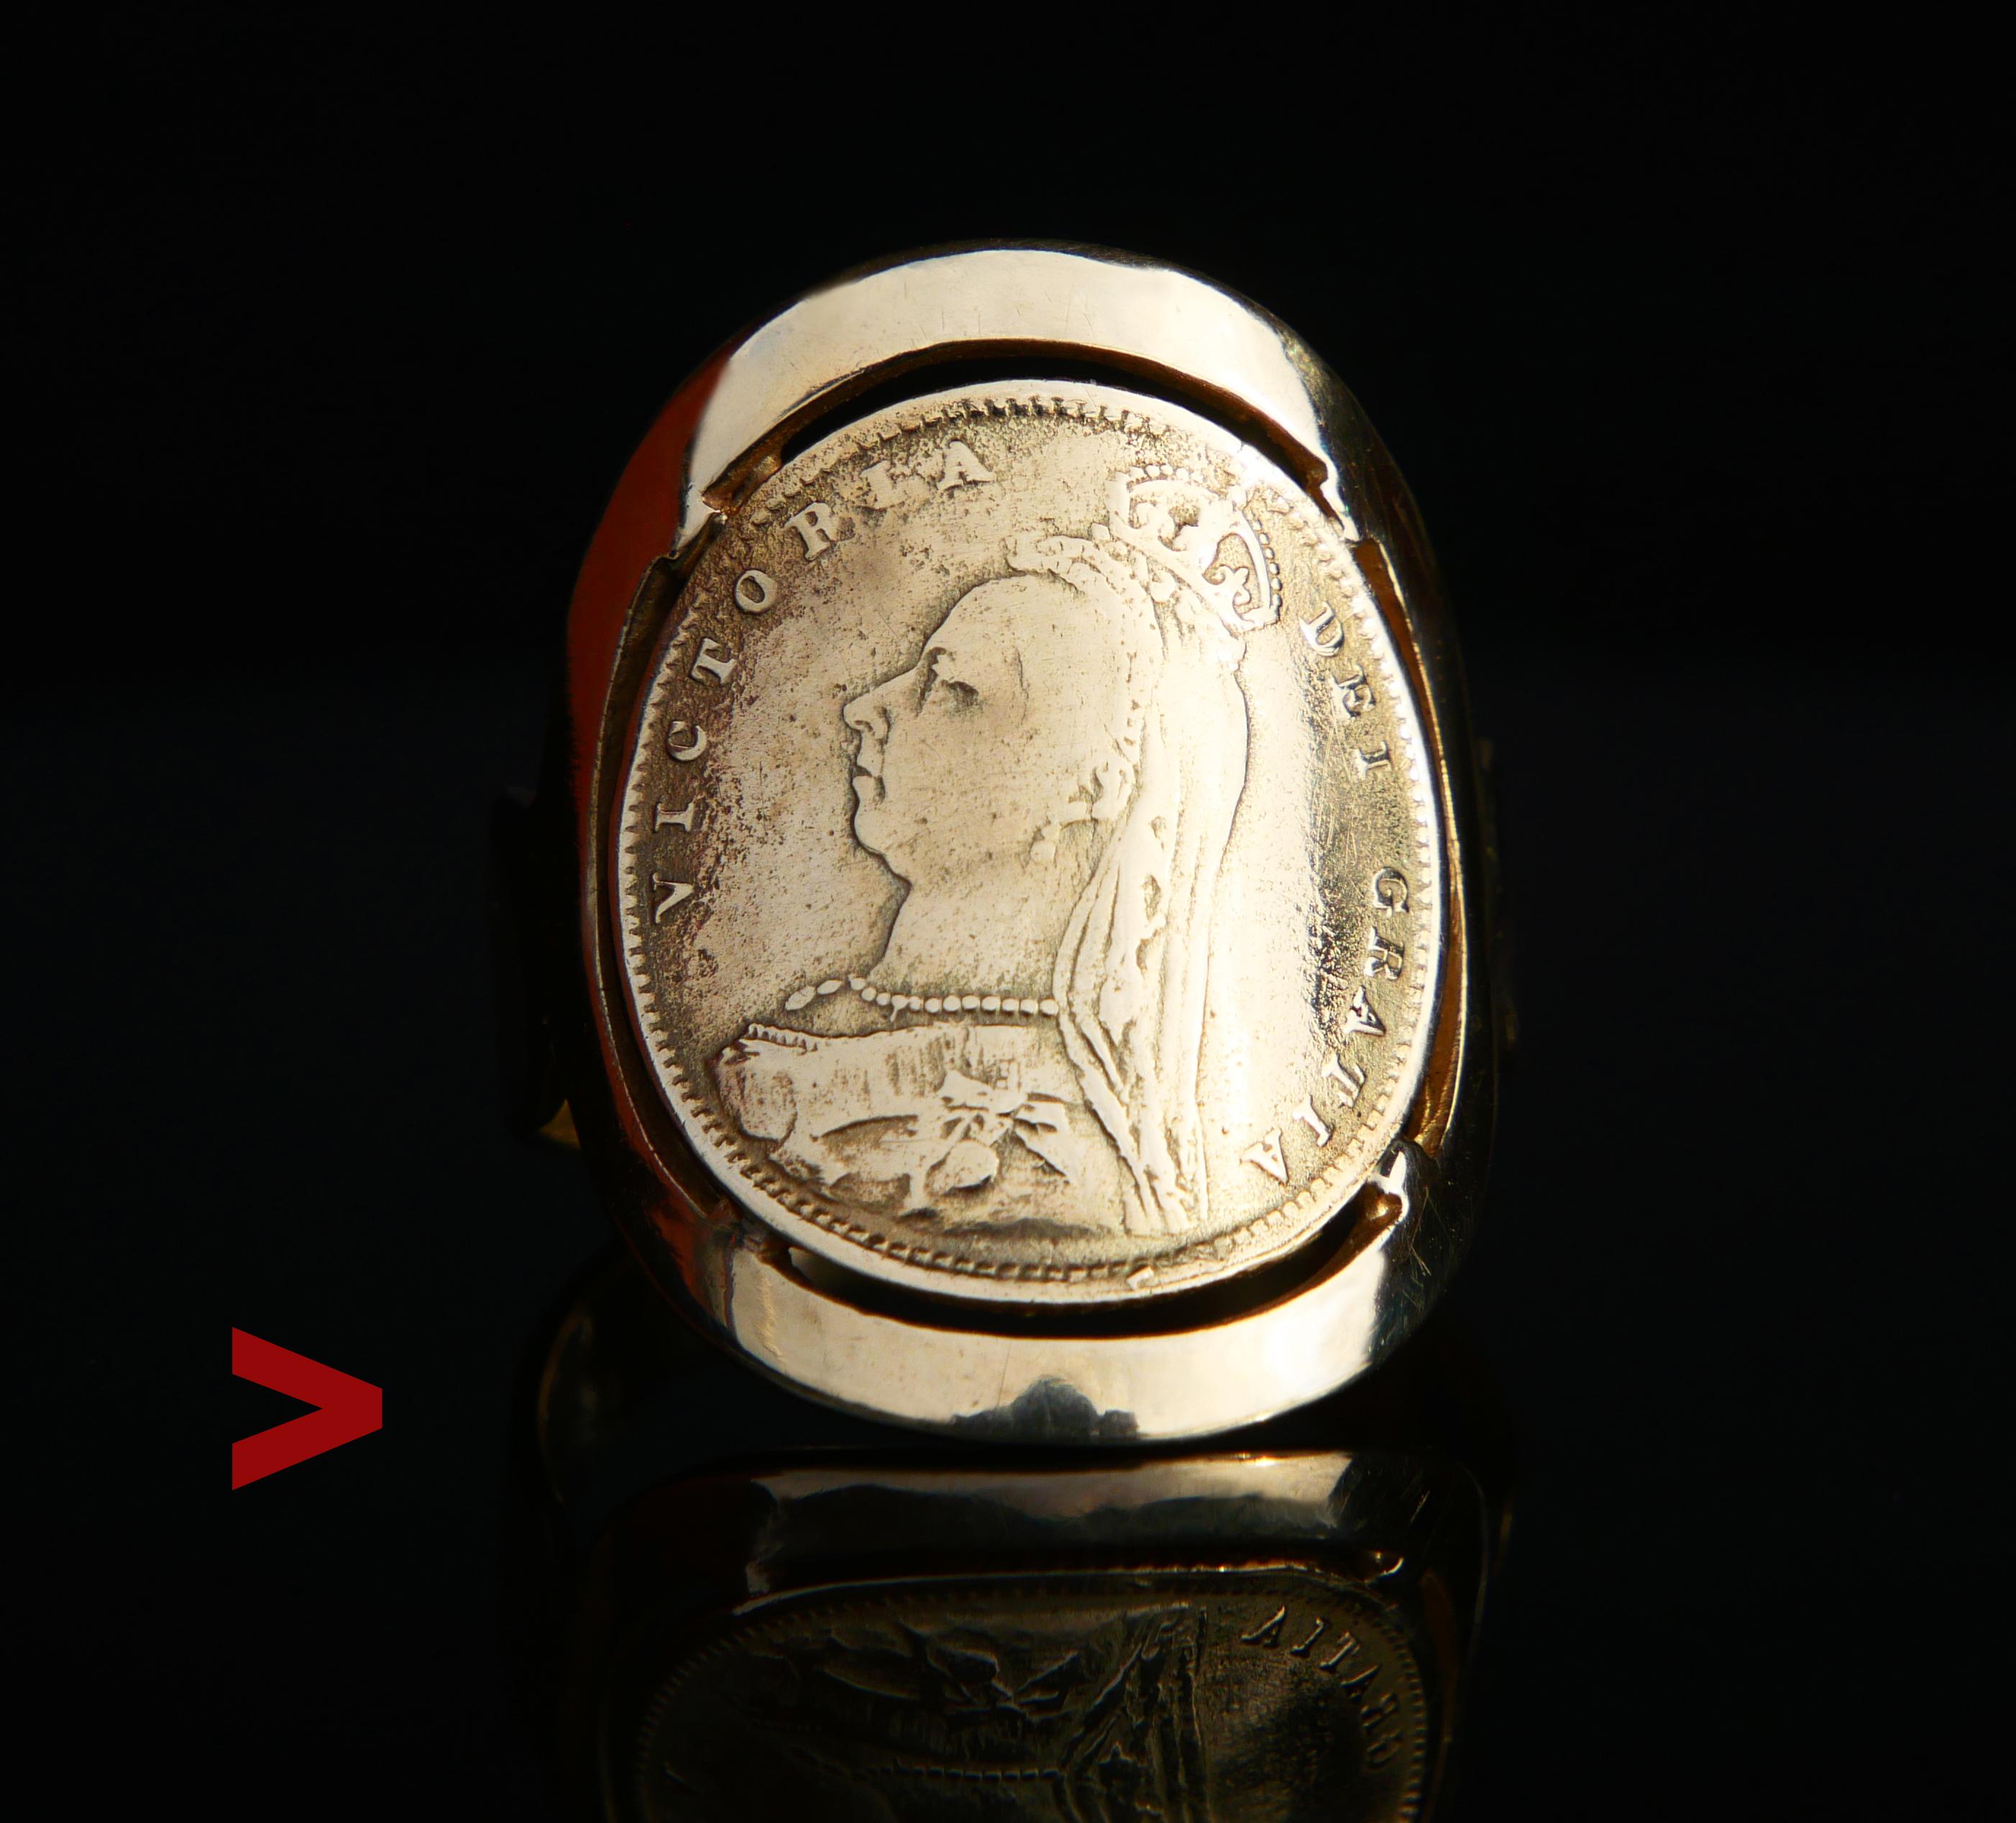 Bague ancienne en forme de pièce de monnaie, habilement réalisée à partir d'une copie d'une pièce de monnaie britannique en or de 1887, le demi-souverain, et d'un large anneau. Le bracelet et la pièce sont en or massif 14 carats (testé). Poinçon